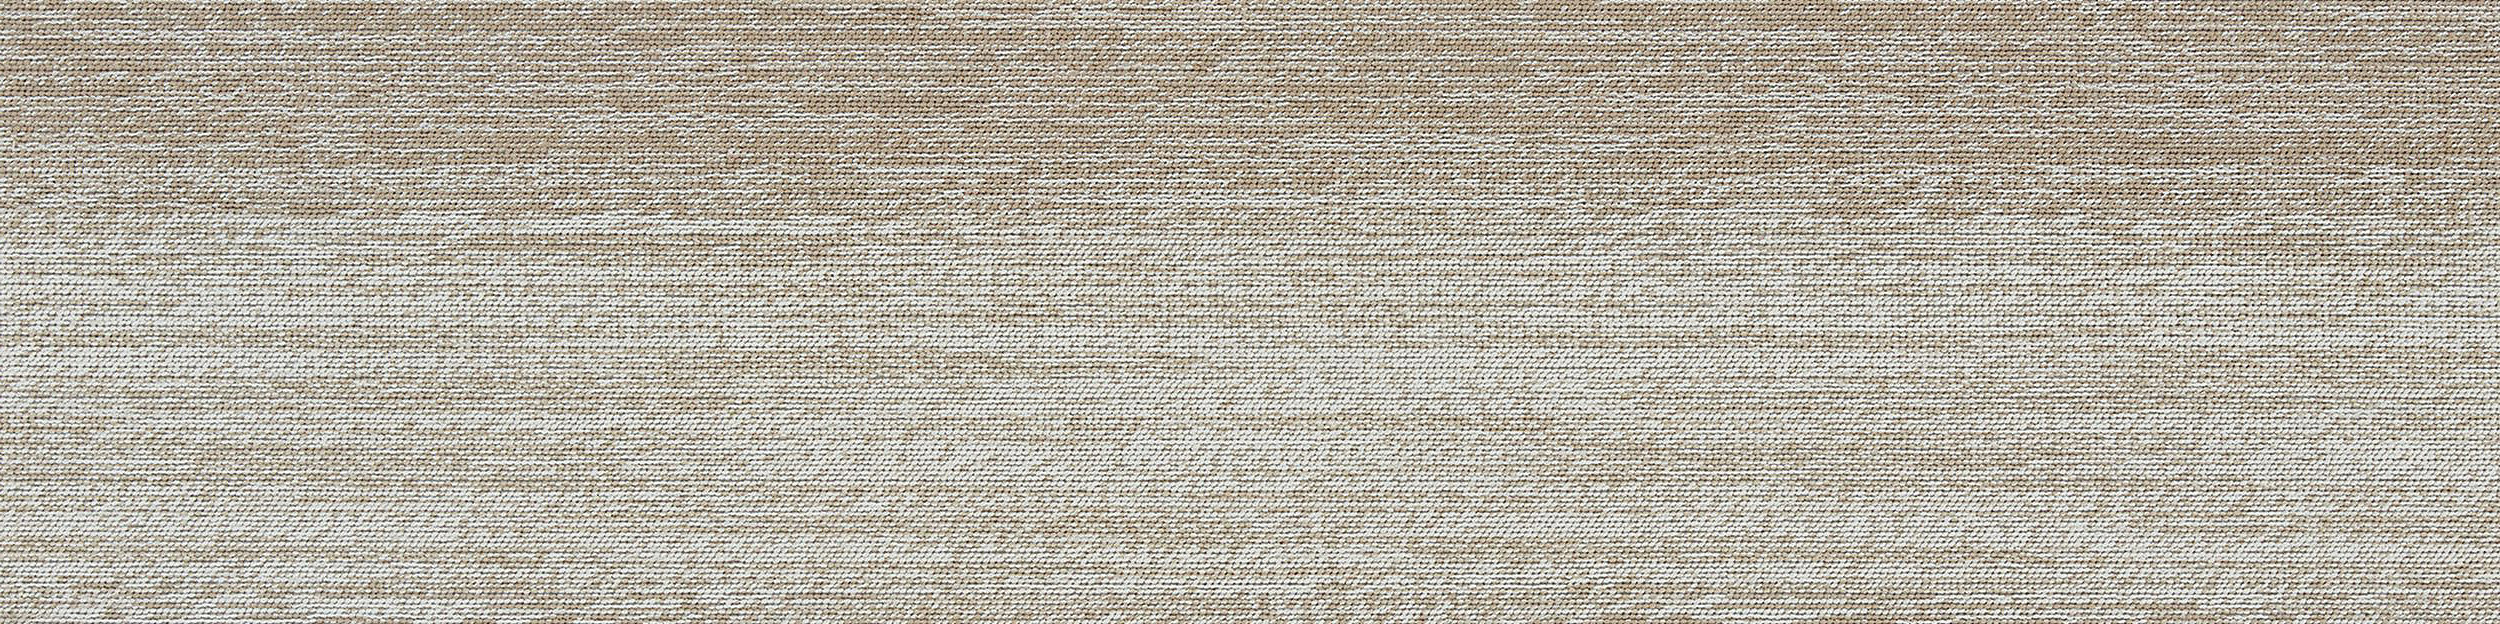 Touch of Timber Carpet Tile in Oak Bildnummer 7